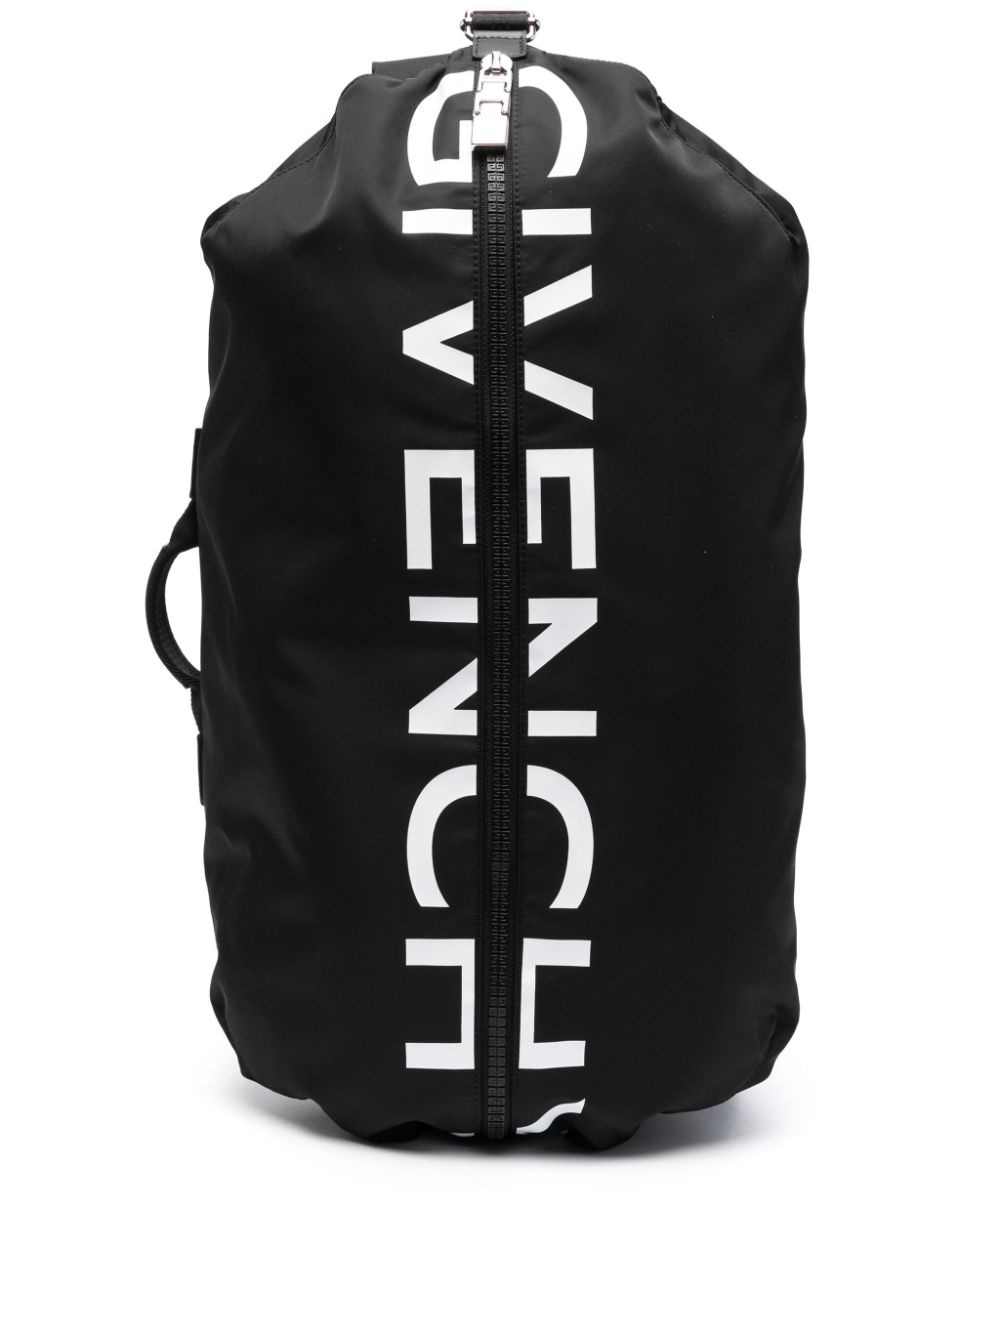 G-Zip backpack - 1